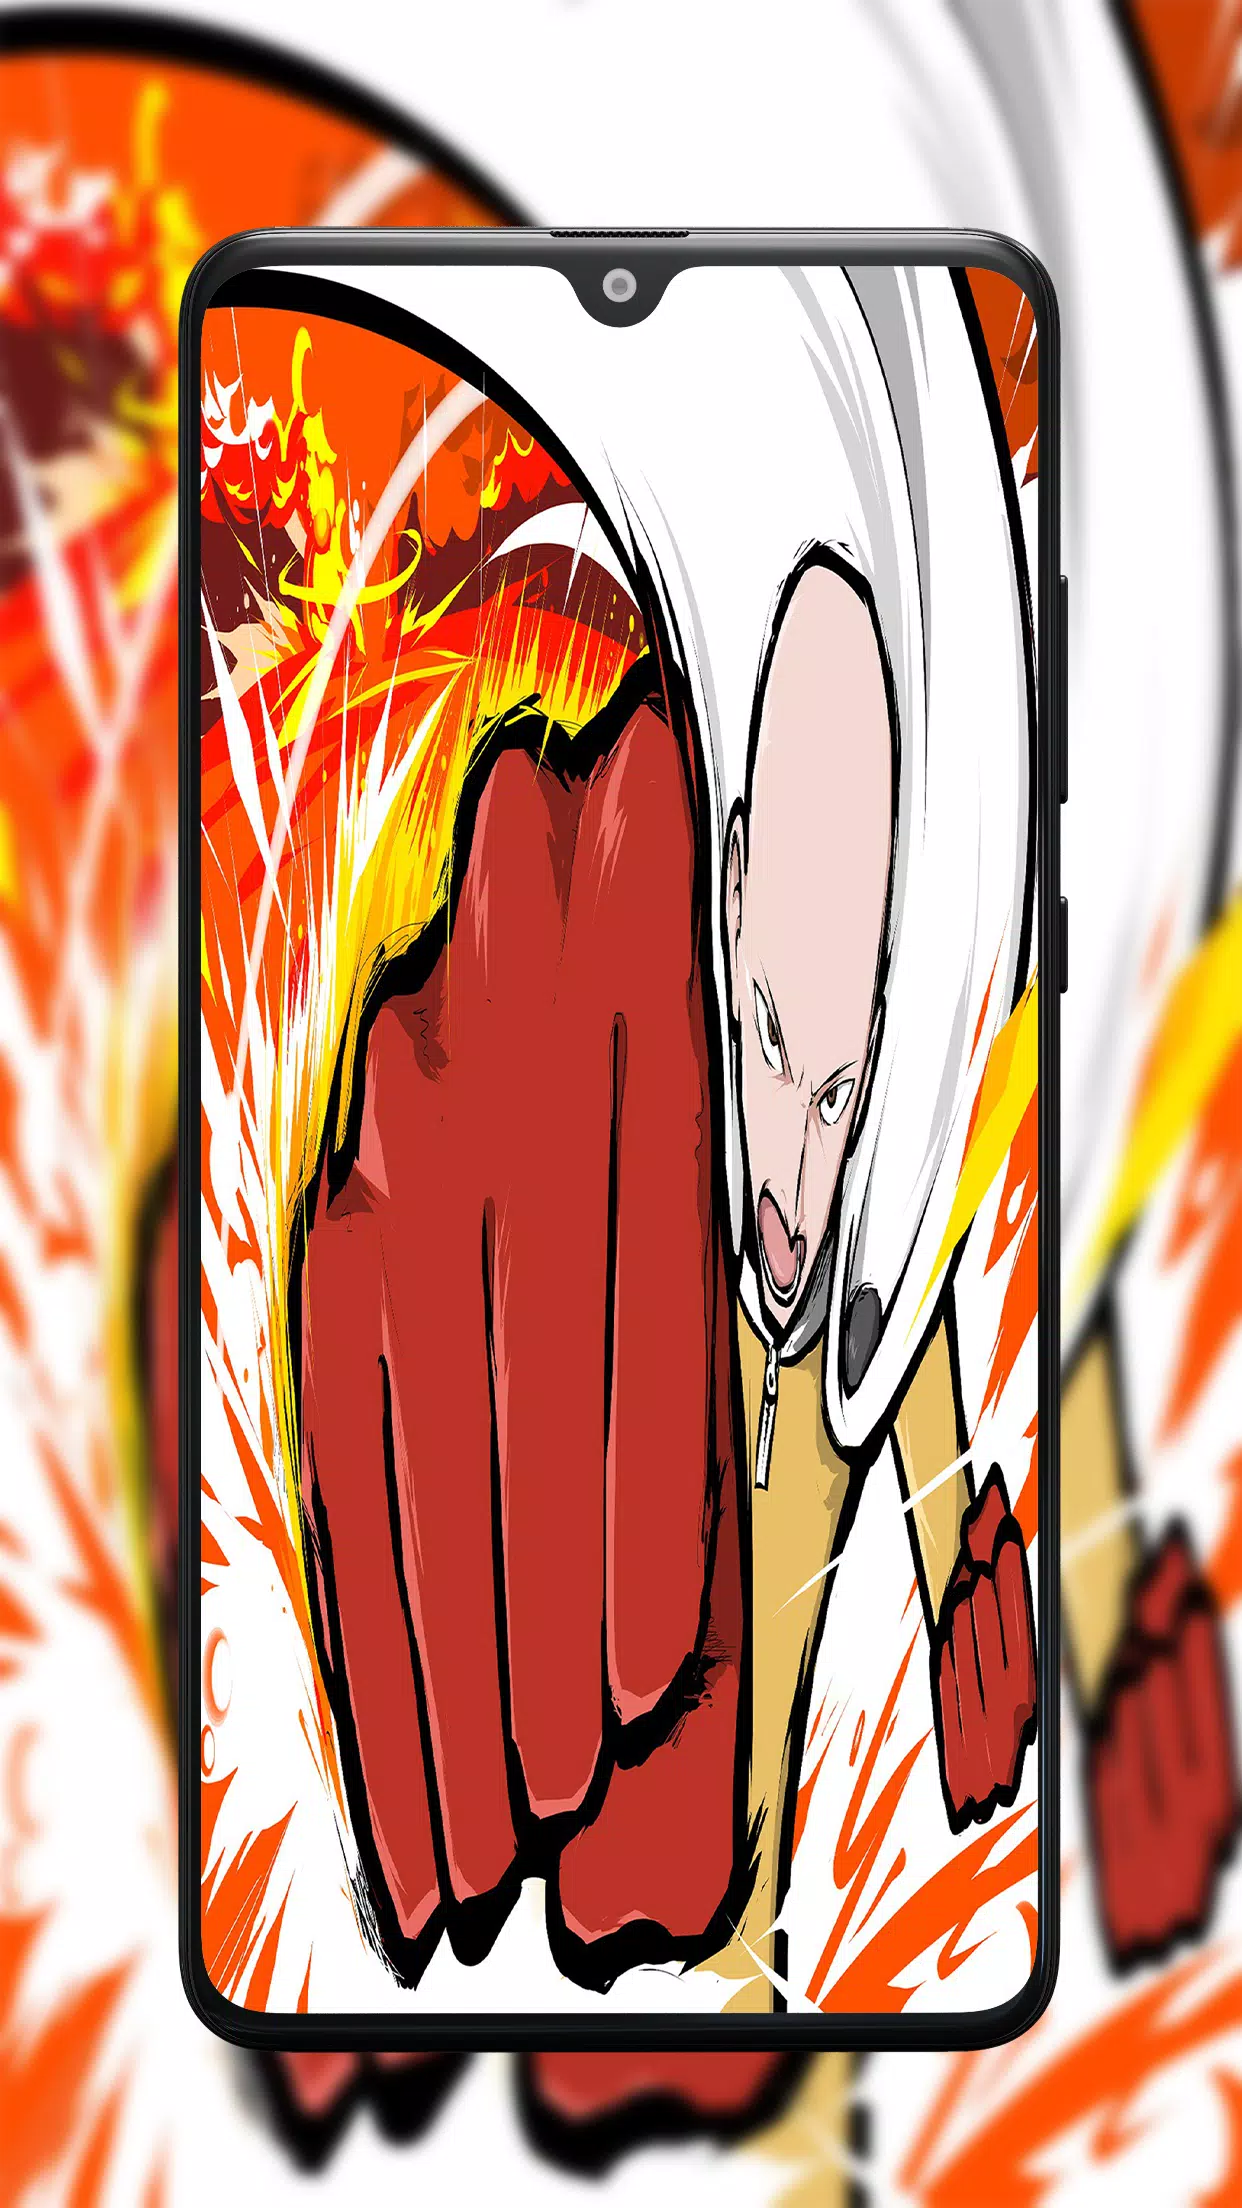 Free: Anime One-Punch Man Saitama (One-Punch Man) Wallpaper